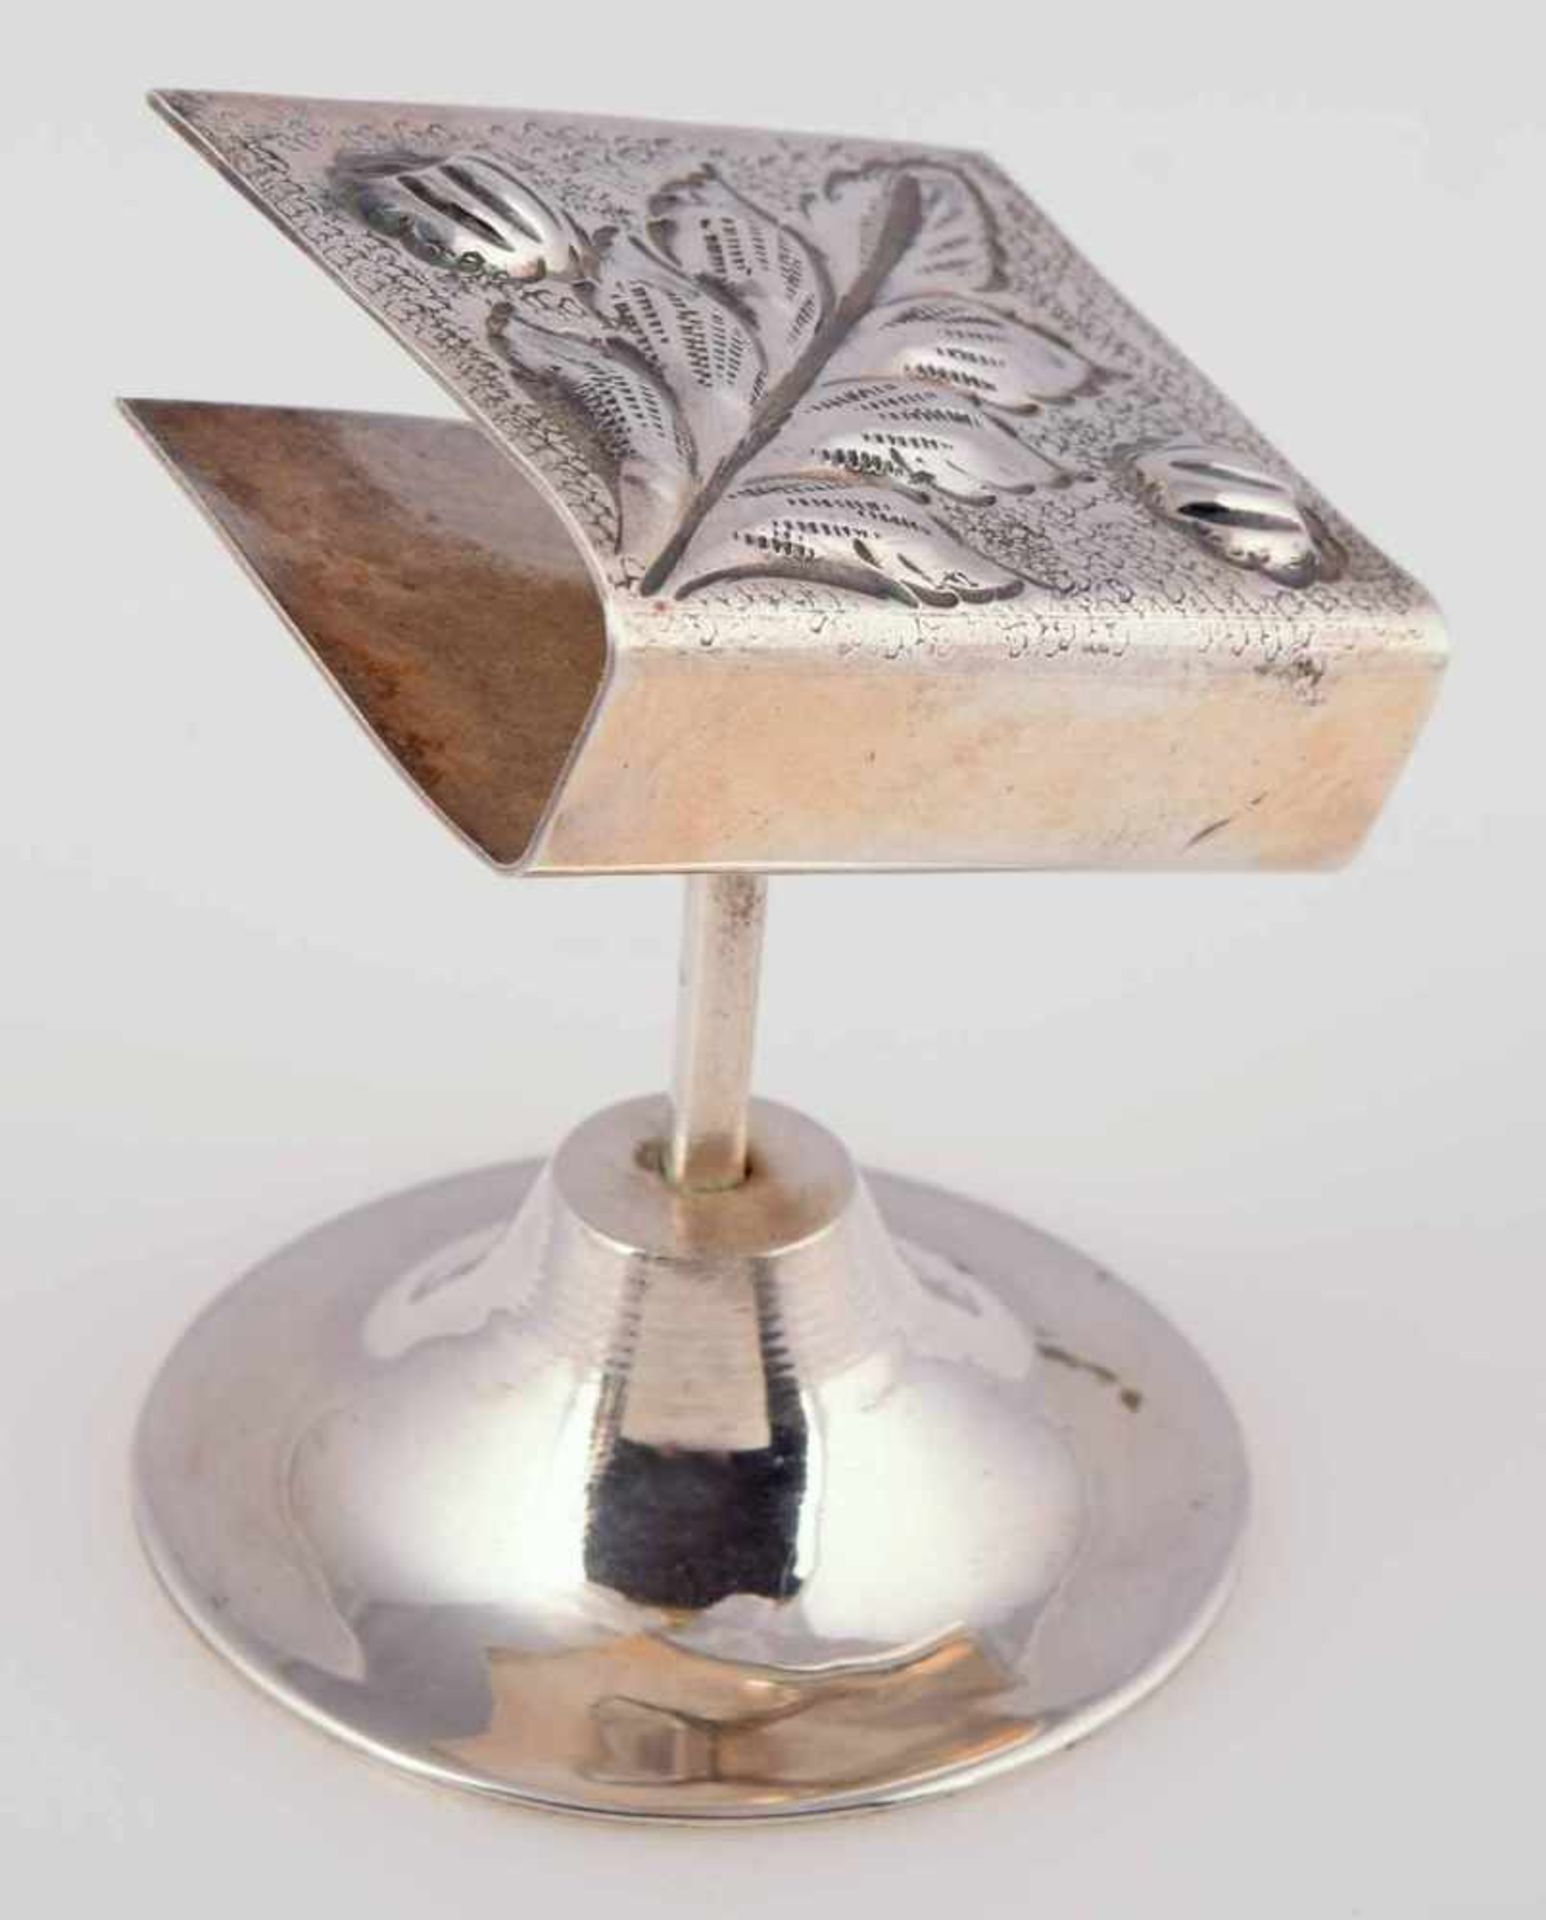 Ständer für Streichholzschachtel Silber 900, gemarkt "Kivircik", buchförmige Halterung mit - Image 3 of 3